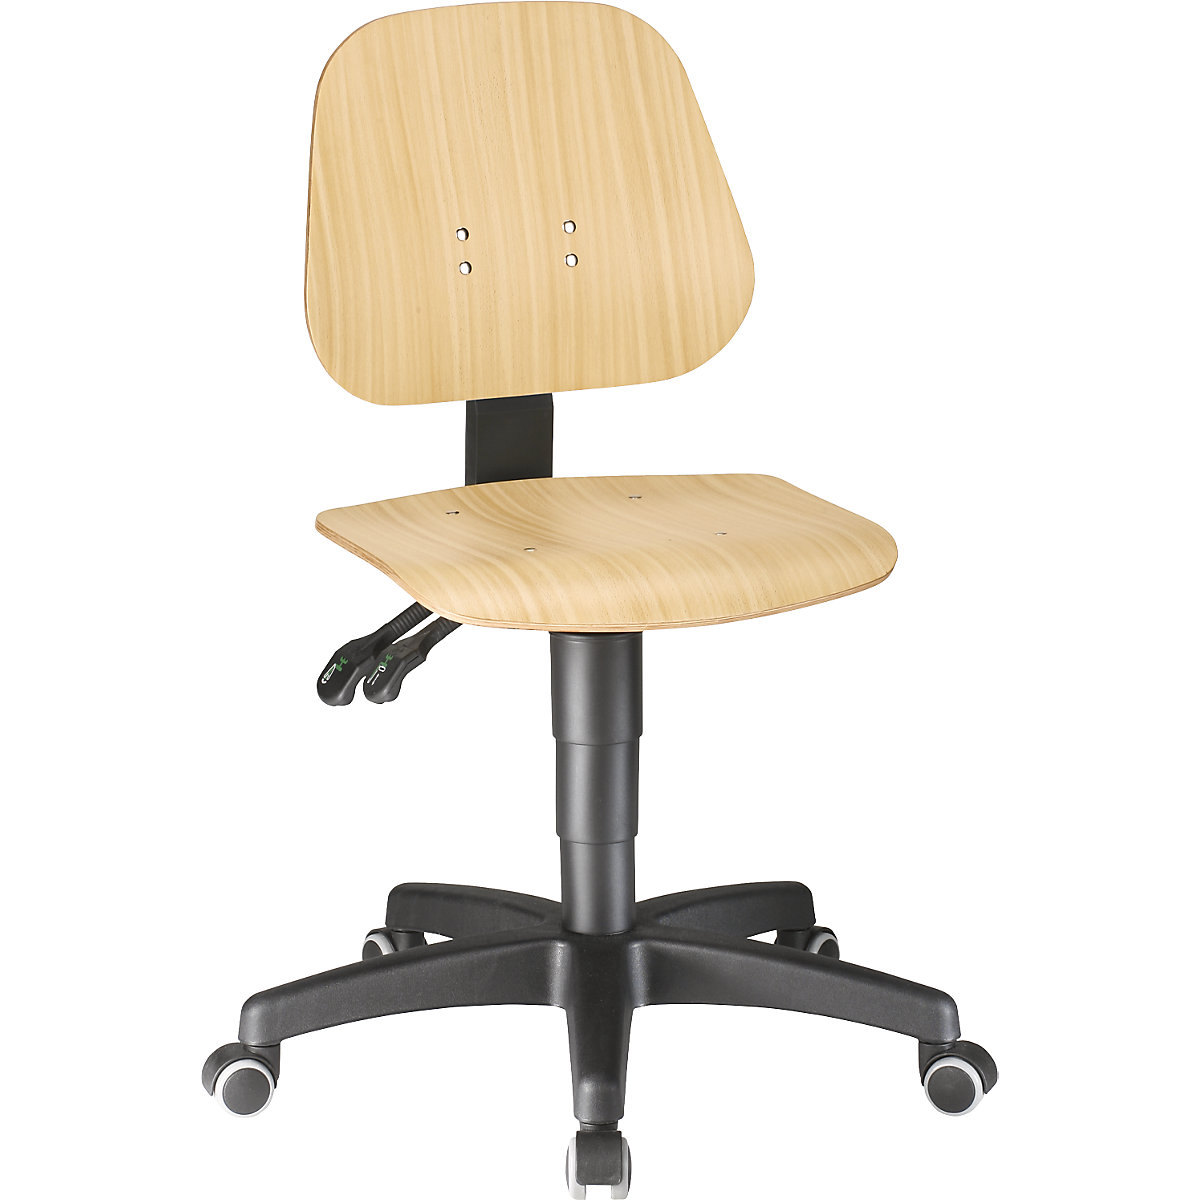 Pracovní otočná židle – bimos, s přestavováním výšky plynovým pístem, bukové vrstvené dřevo, s kolečky-16